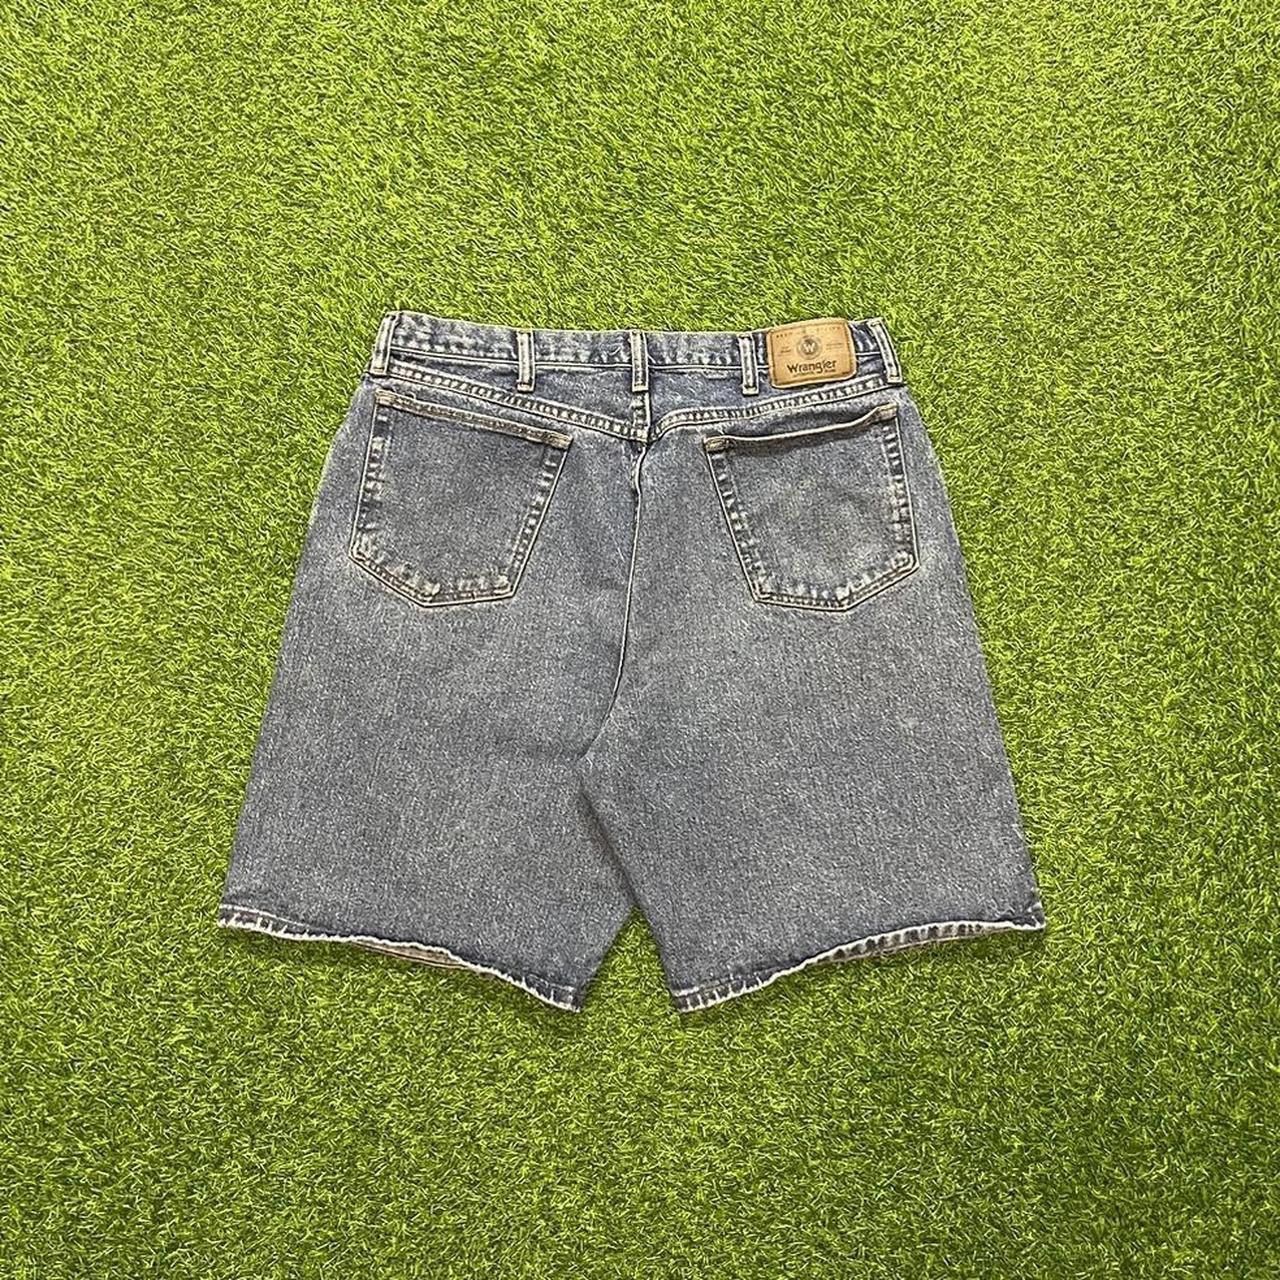 Wrangler Shorts : Buy Wrangler Mens Green Shorts Regular Fit